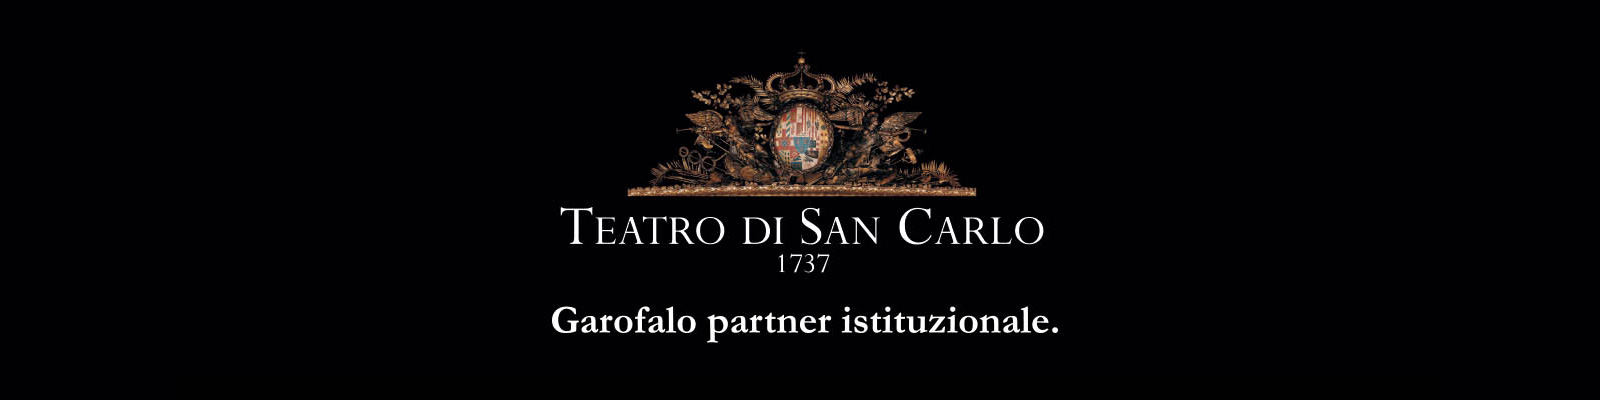 A massa Garofalo patrocina o Teatro S. Carlo